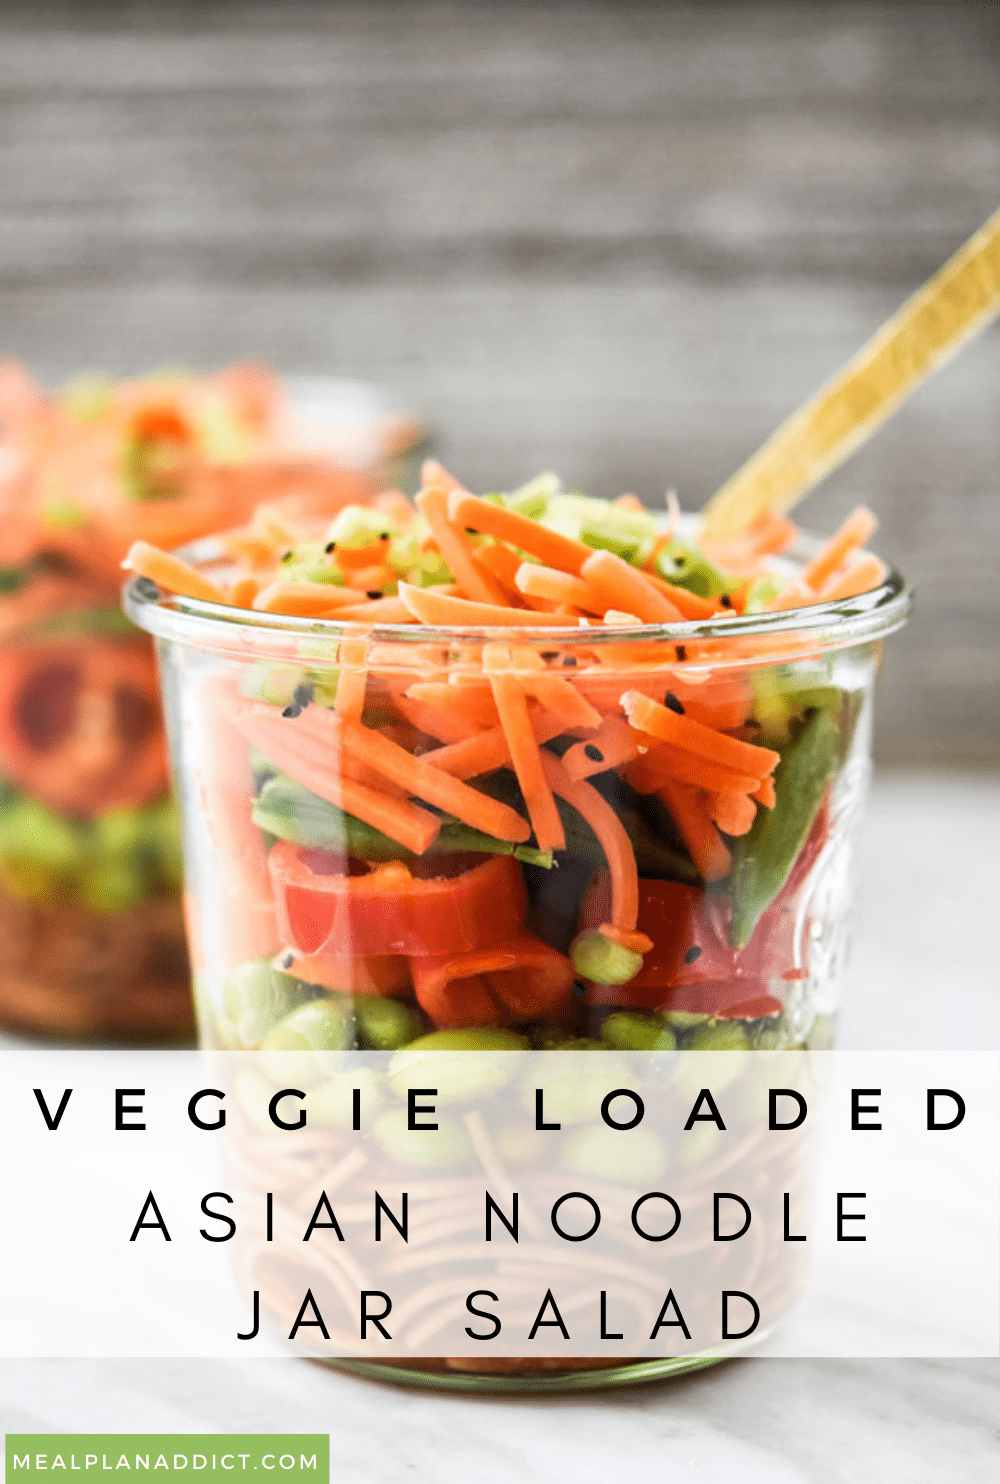 Asian noodle Jar salad pin for Pinterest